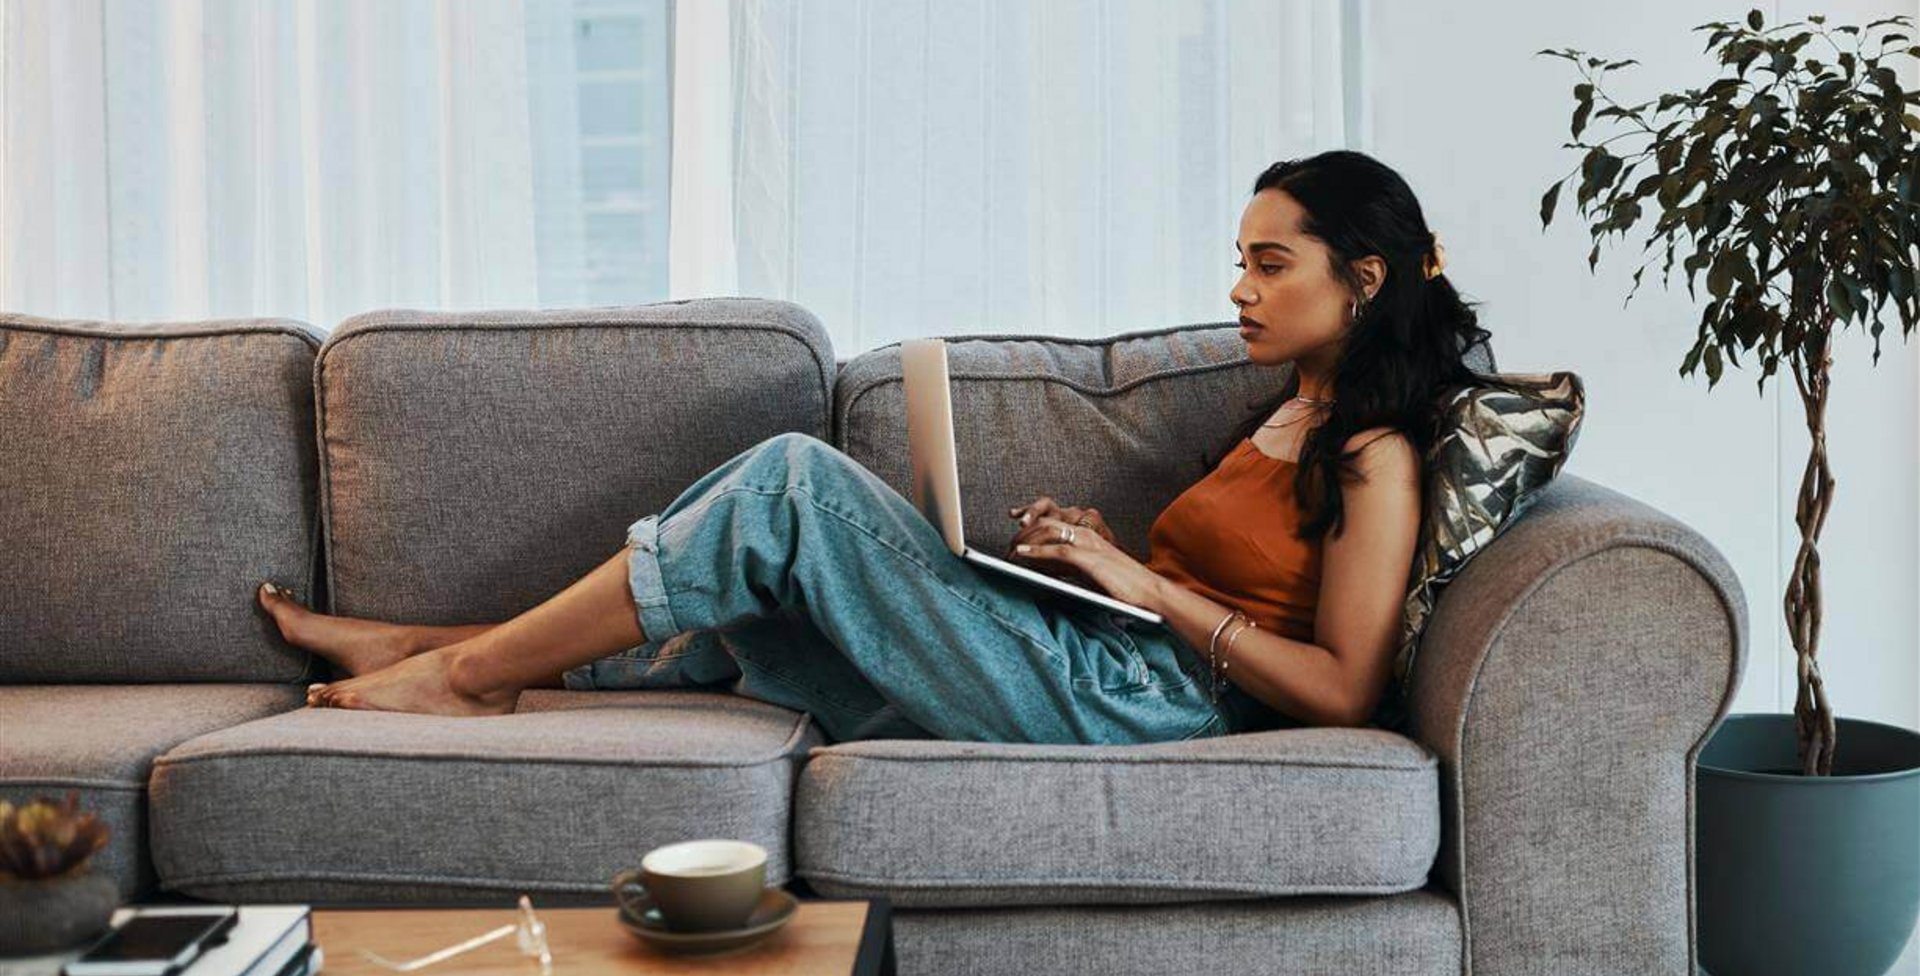 Auf dem Bild sieht man eine Frau, die mit einem Laptop auf dem Sofa liegt. Erfahre, welche gesundheitlichen Folgen Bewegungsmangel haben kann.